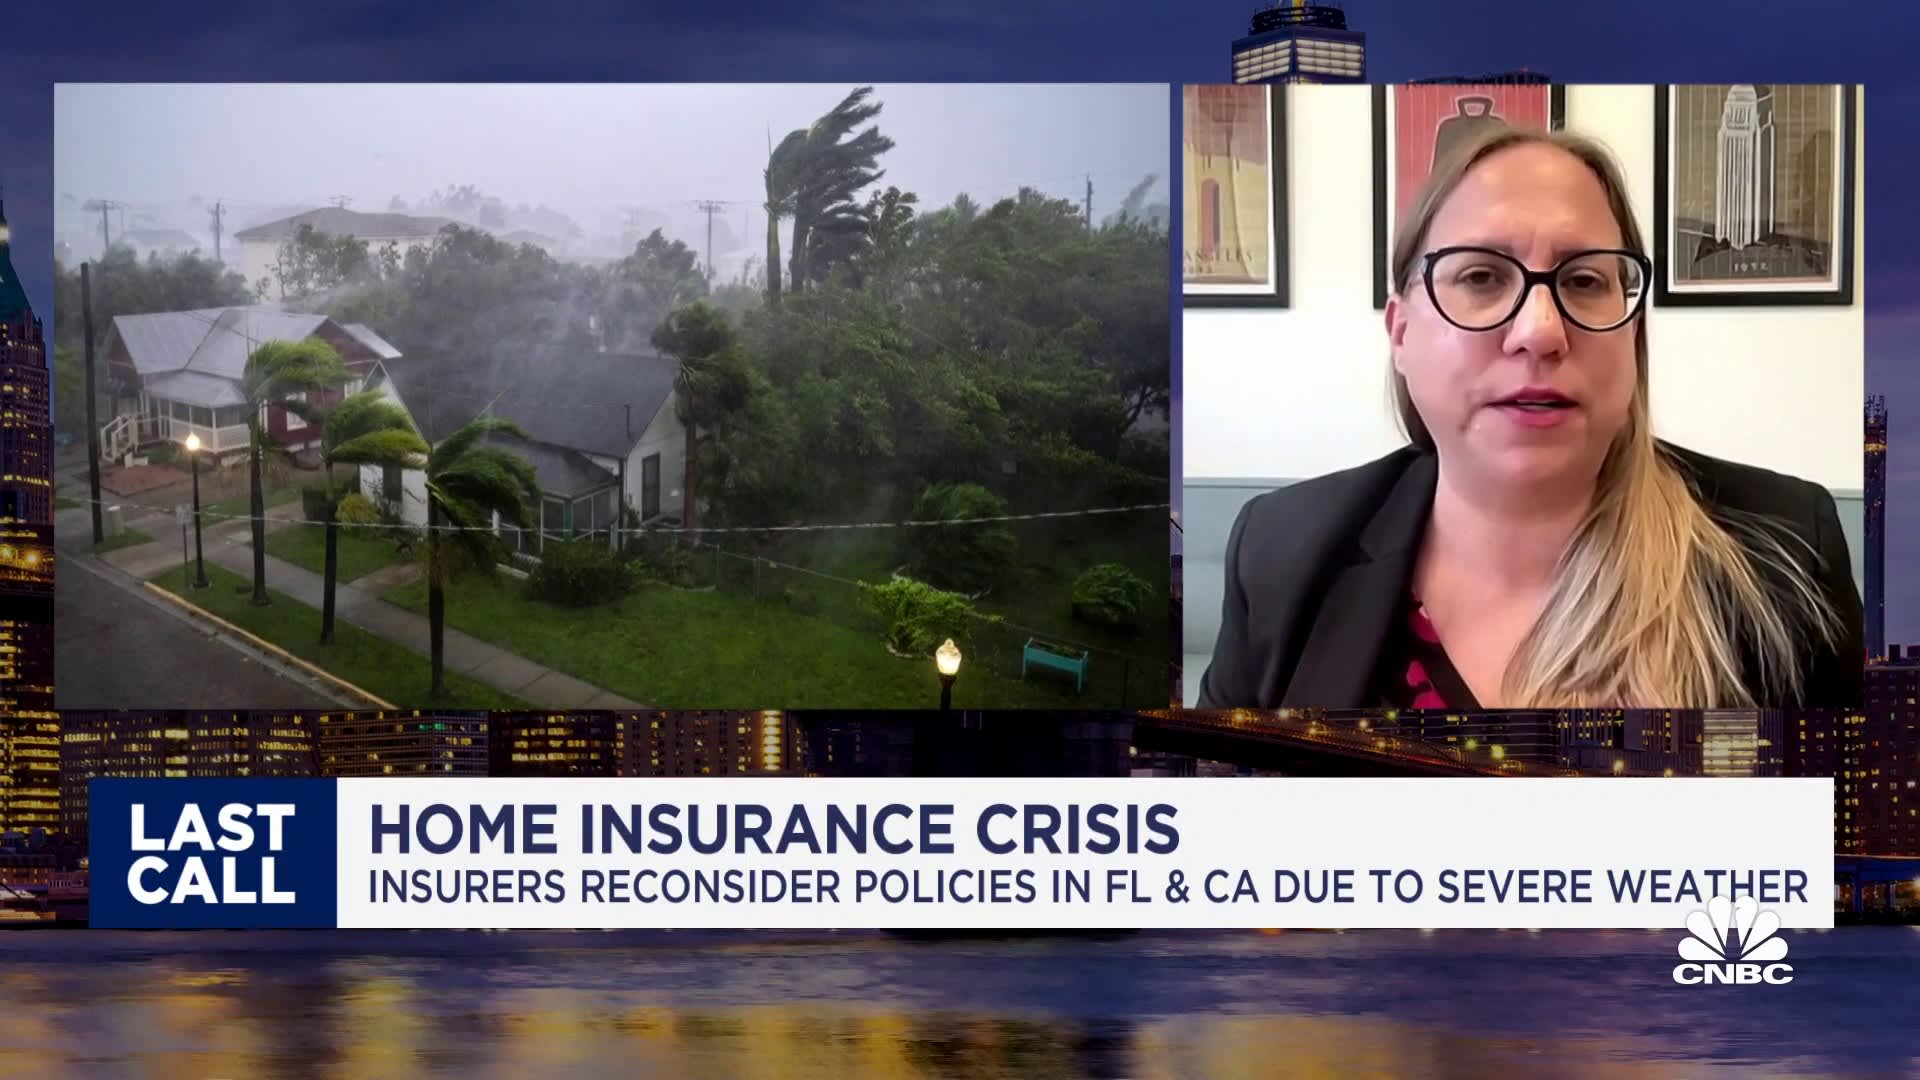 住宅保険会社、悪天候のためフロリダ州とカリフォルニア州で保険を再検討